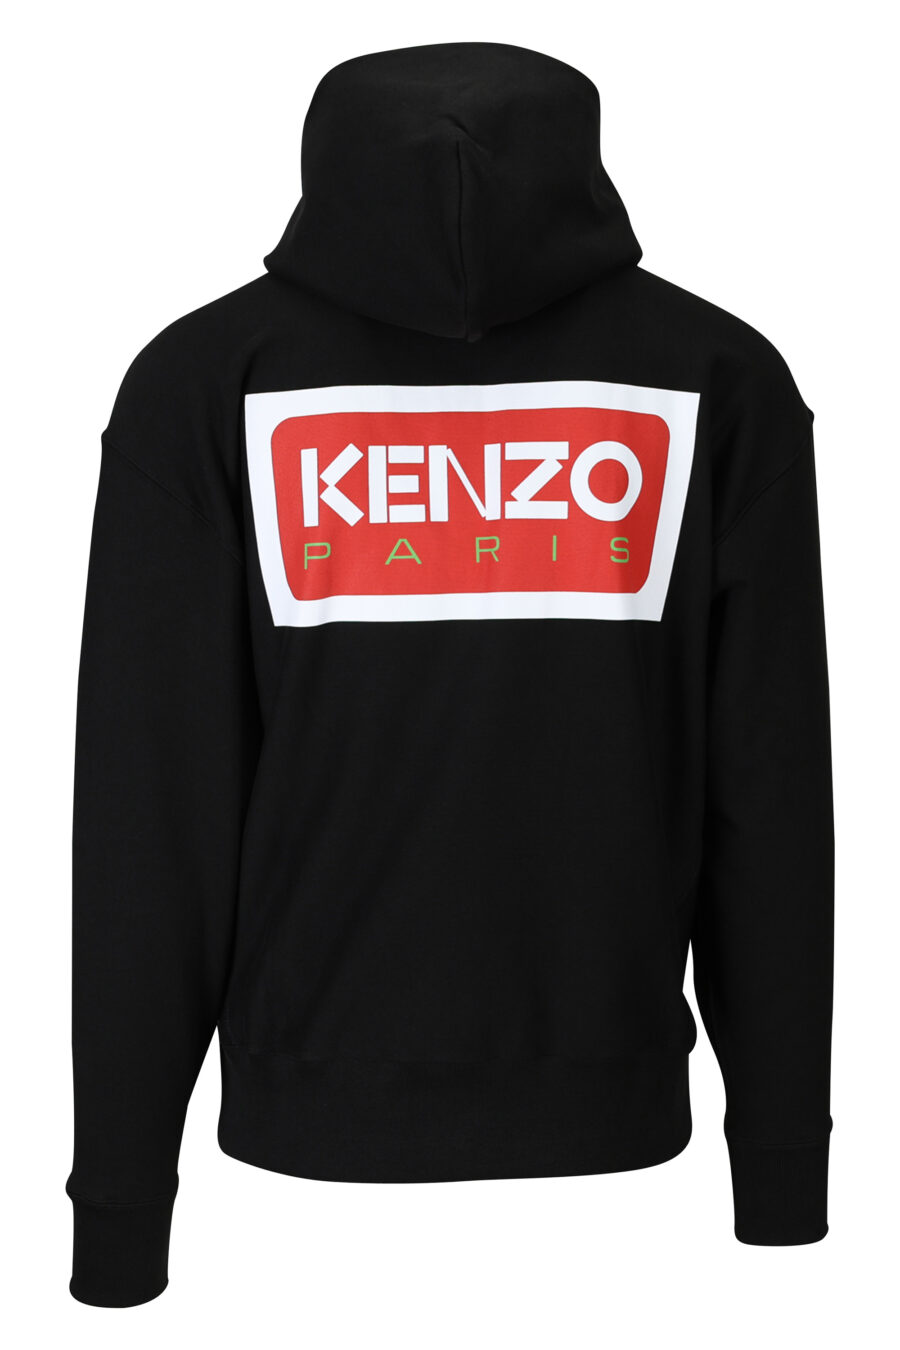 Sweatshirt preta de tamanho grande com capuz e fecho de correr e logótipo "kenzo paris" - 3612230539334 1